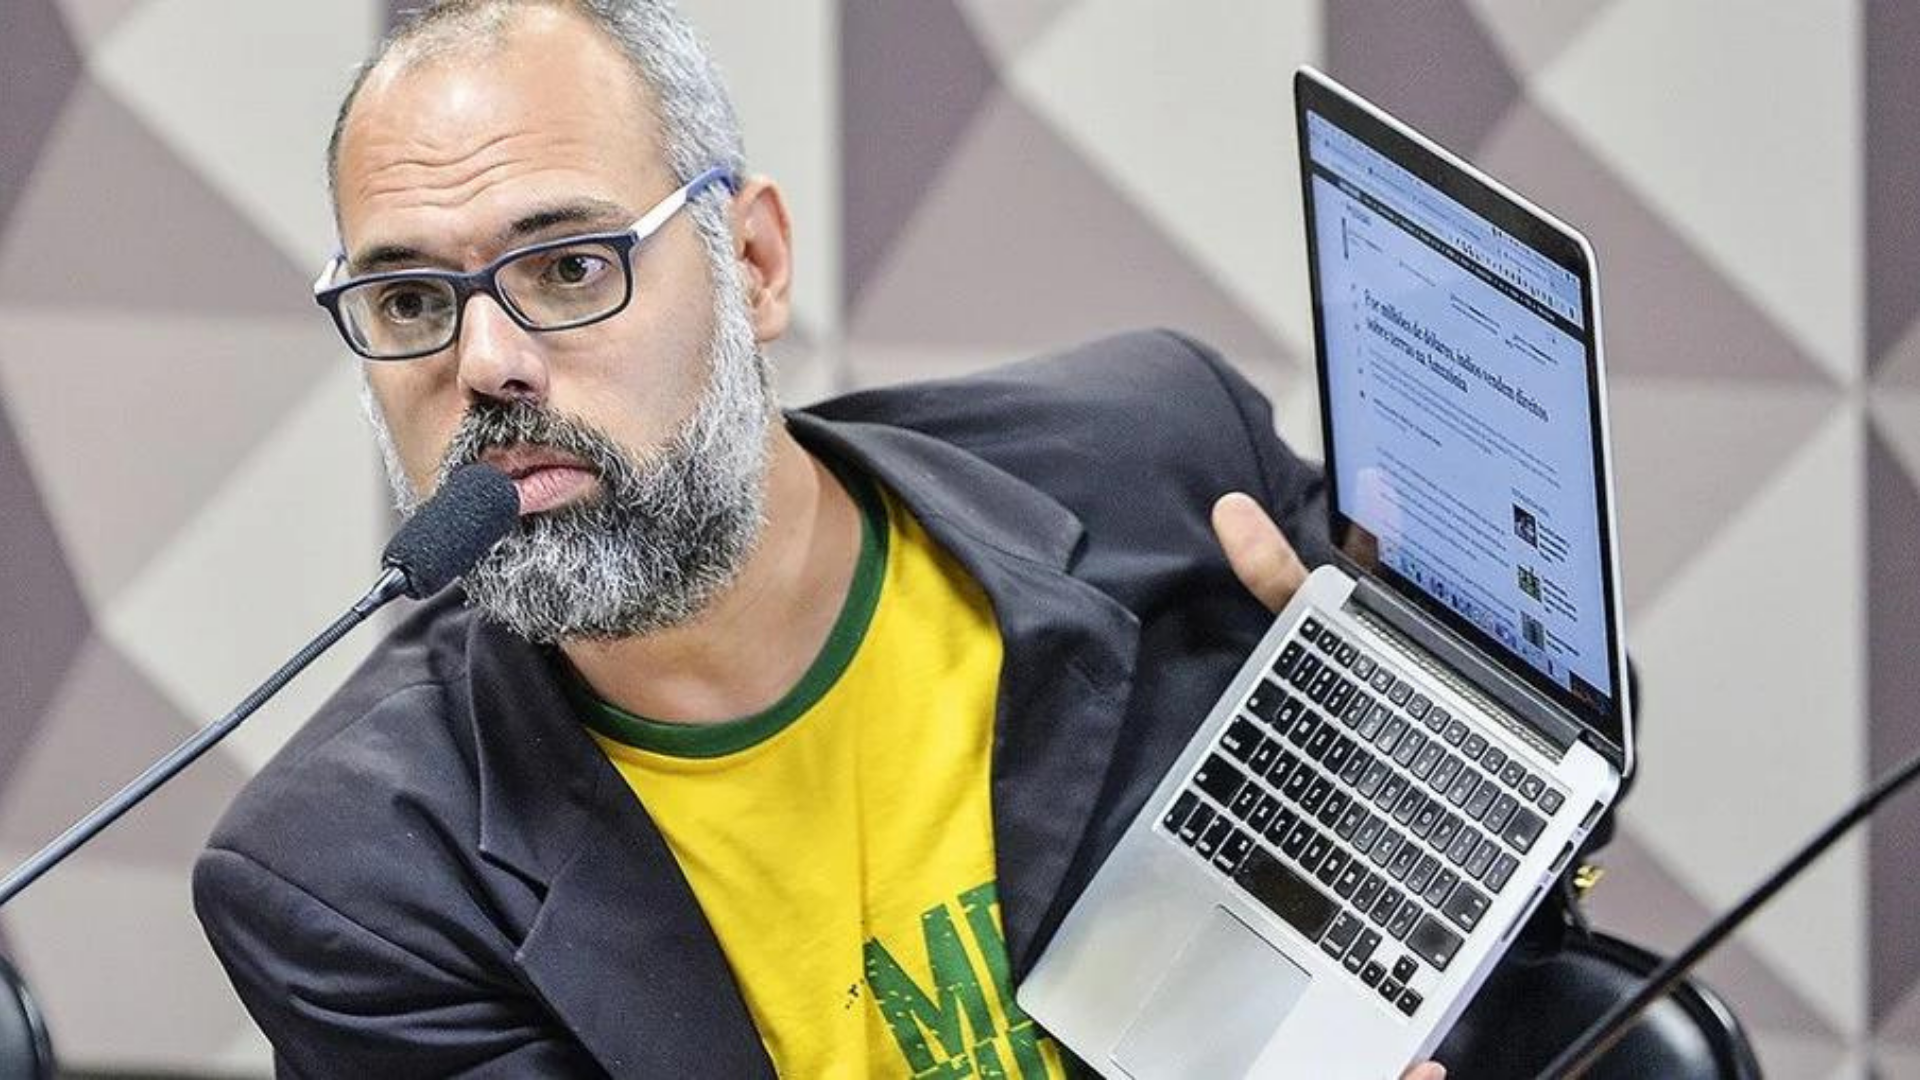 Allan dos Santos ataca Moraes. Blogueiro usa camisa verde e amarela com terno preto, óculos, barba e cabelo grisalhos. Segura laptop com as mãos